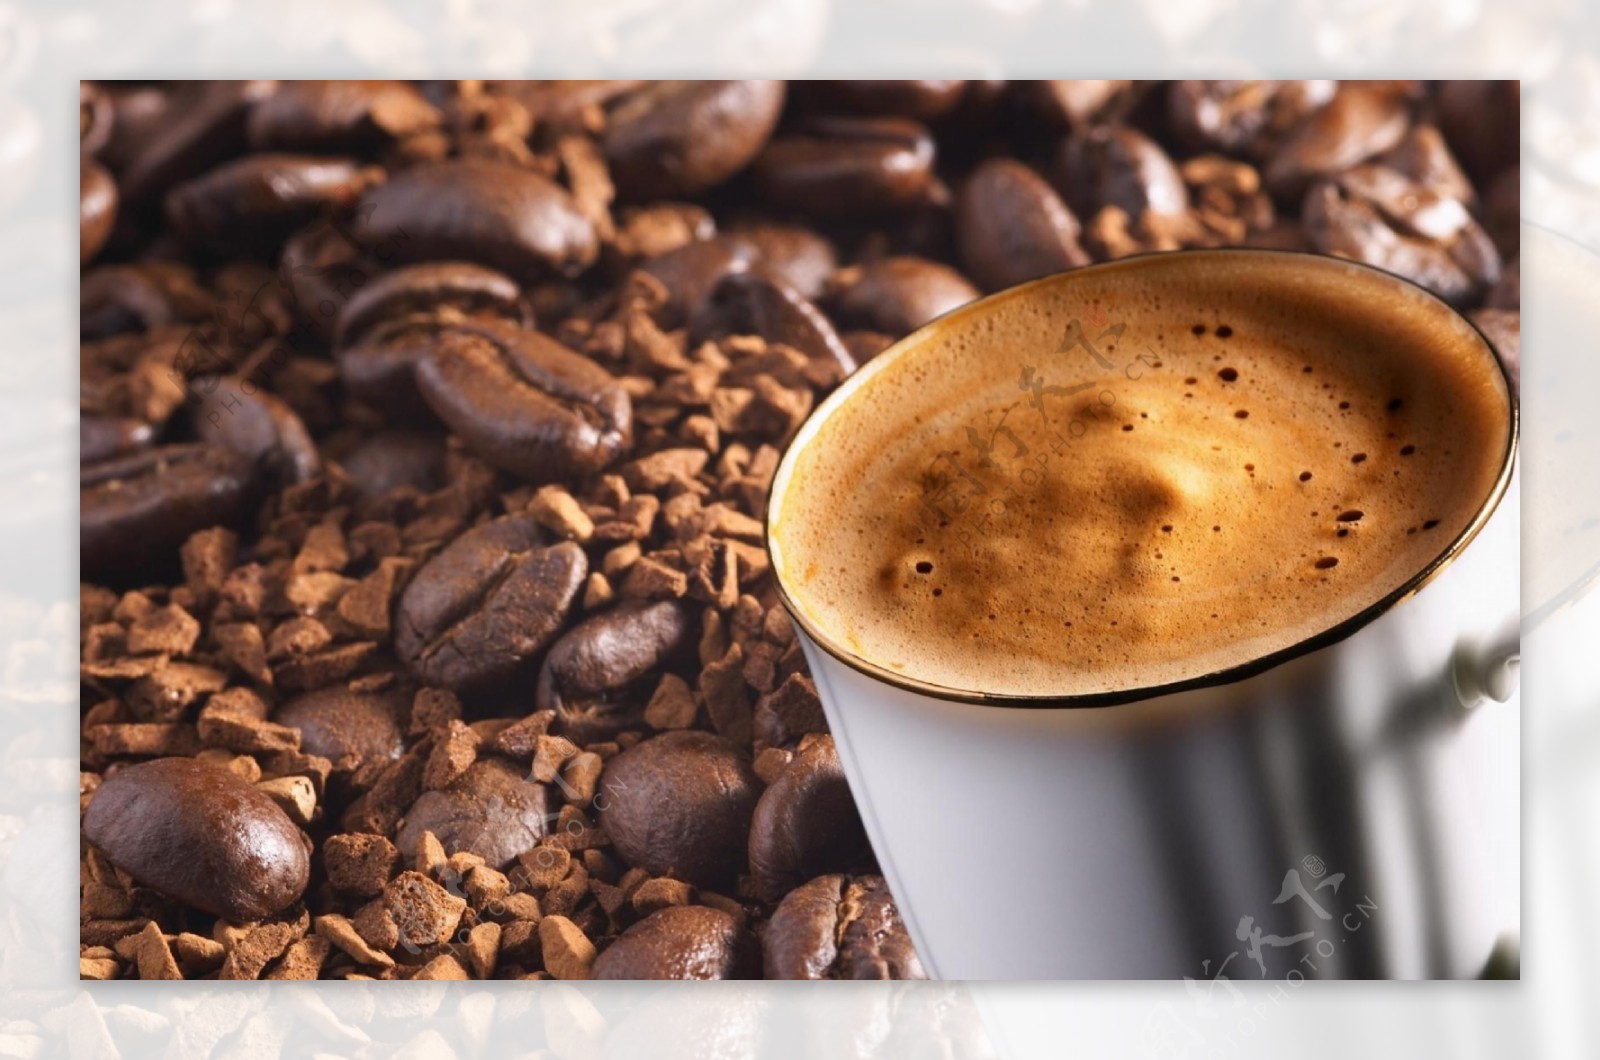 咖啡豆咖啡图片